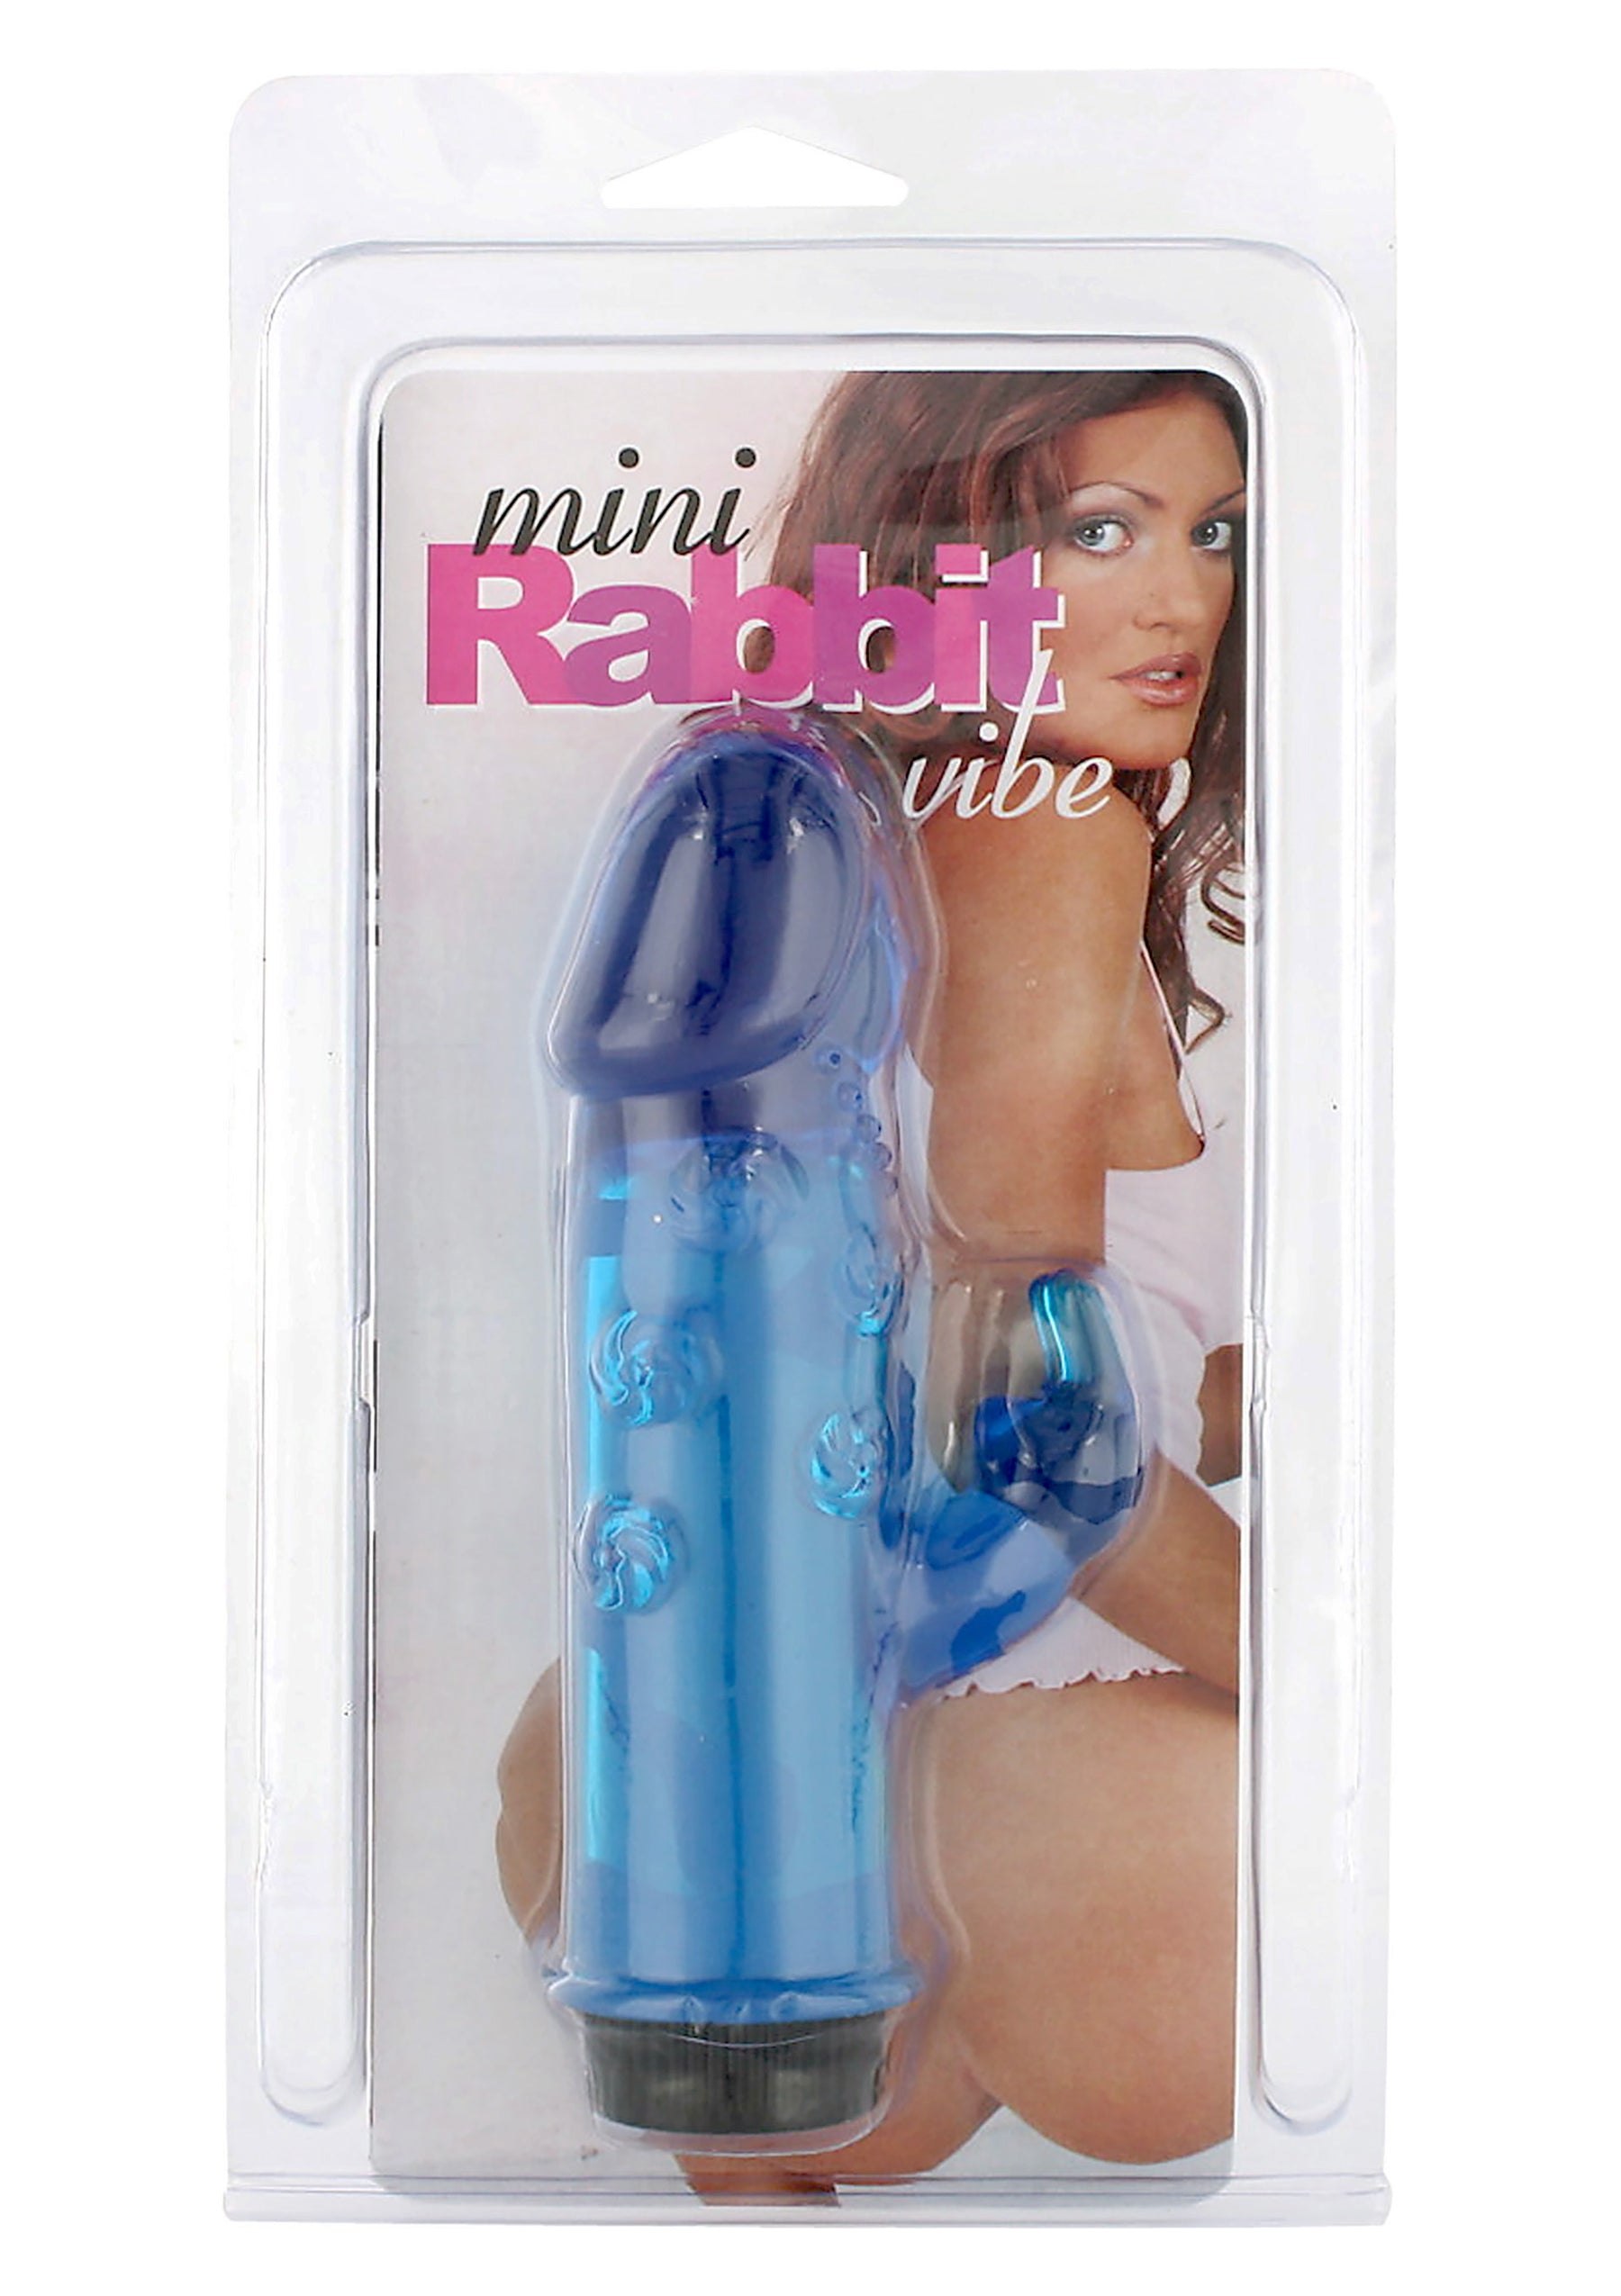 Mini Rabbit Vibrator-erotic-world-munchen.myshopify.com